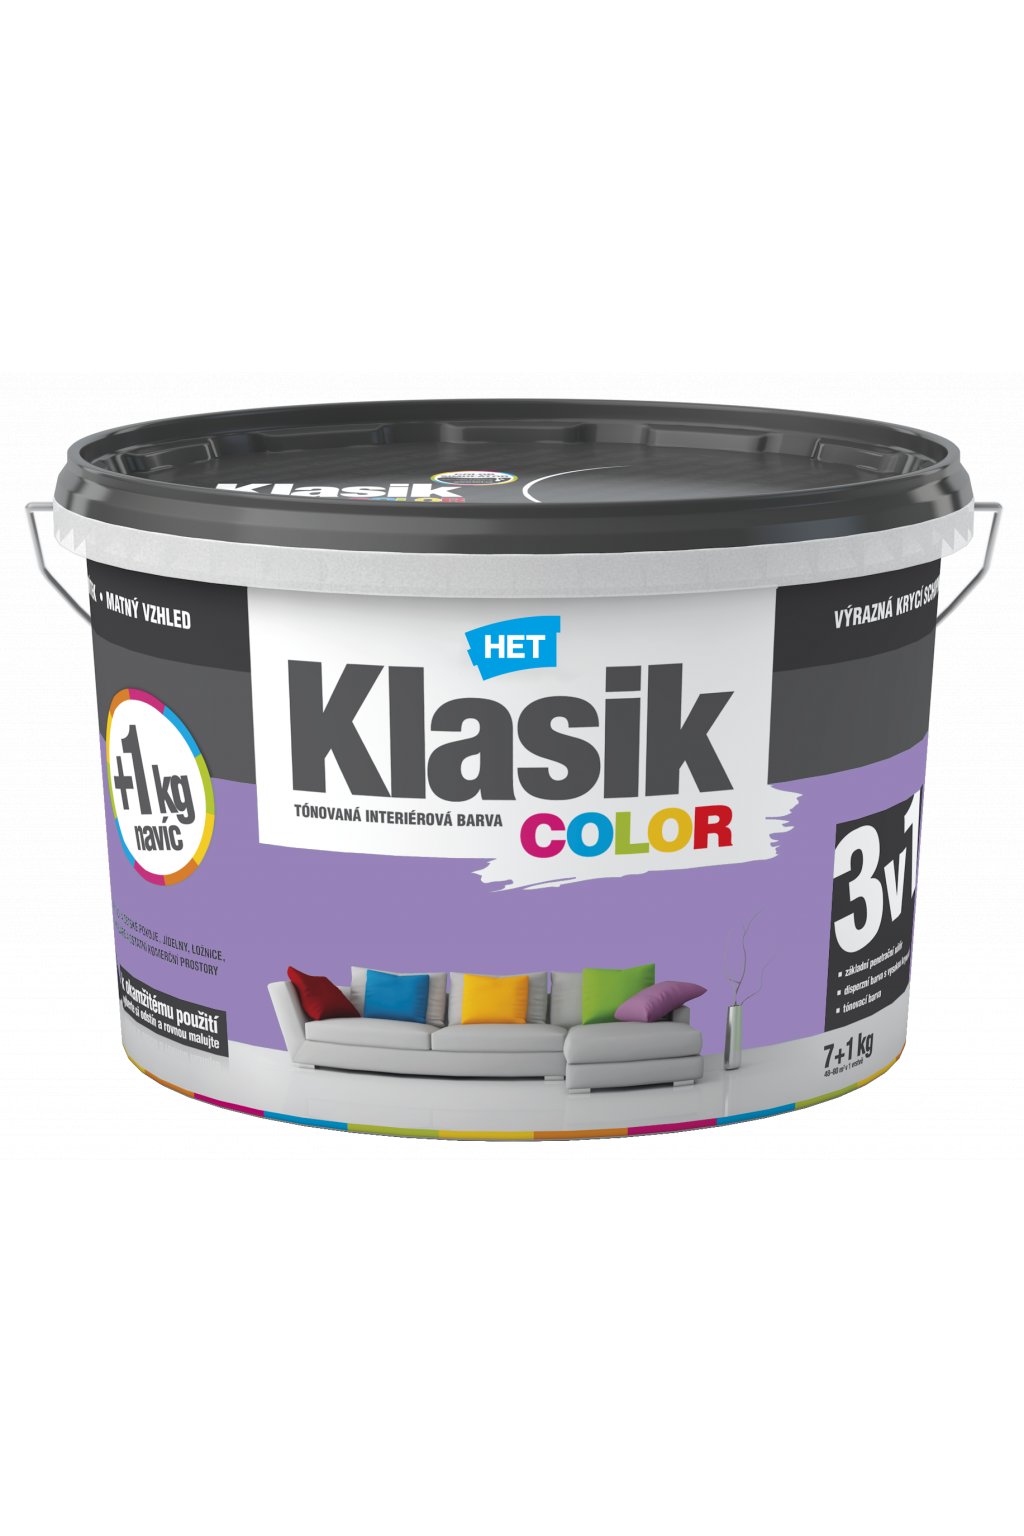 Klasik Color Kmb Barvy S R O